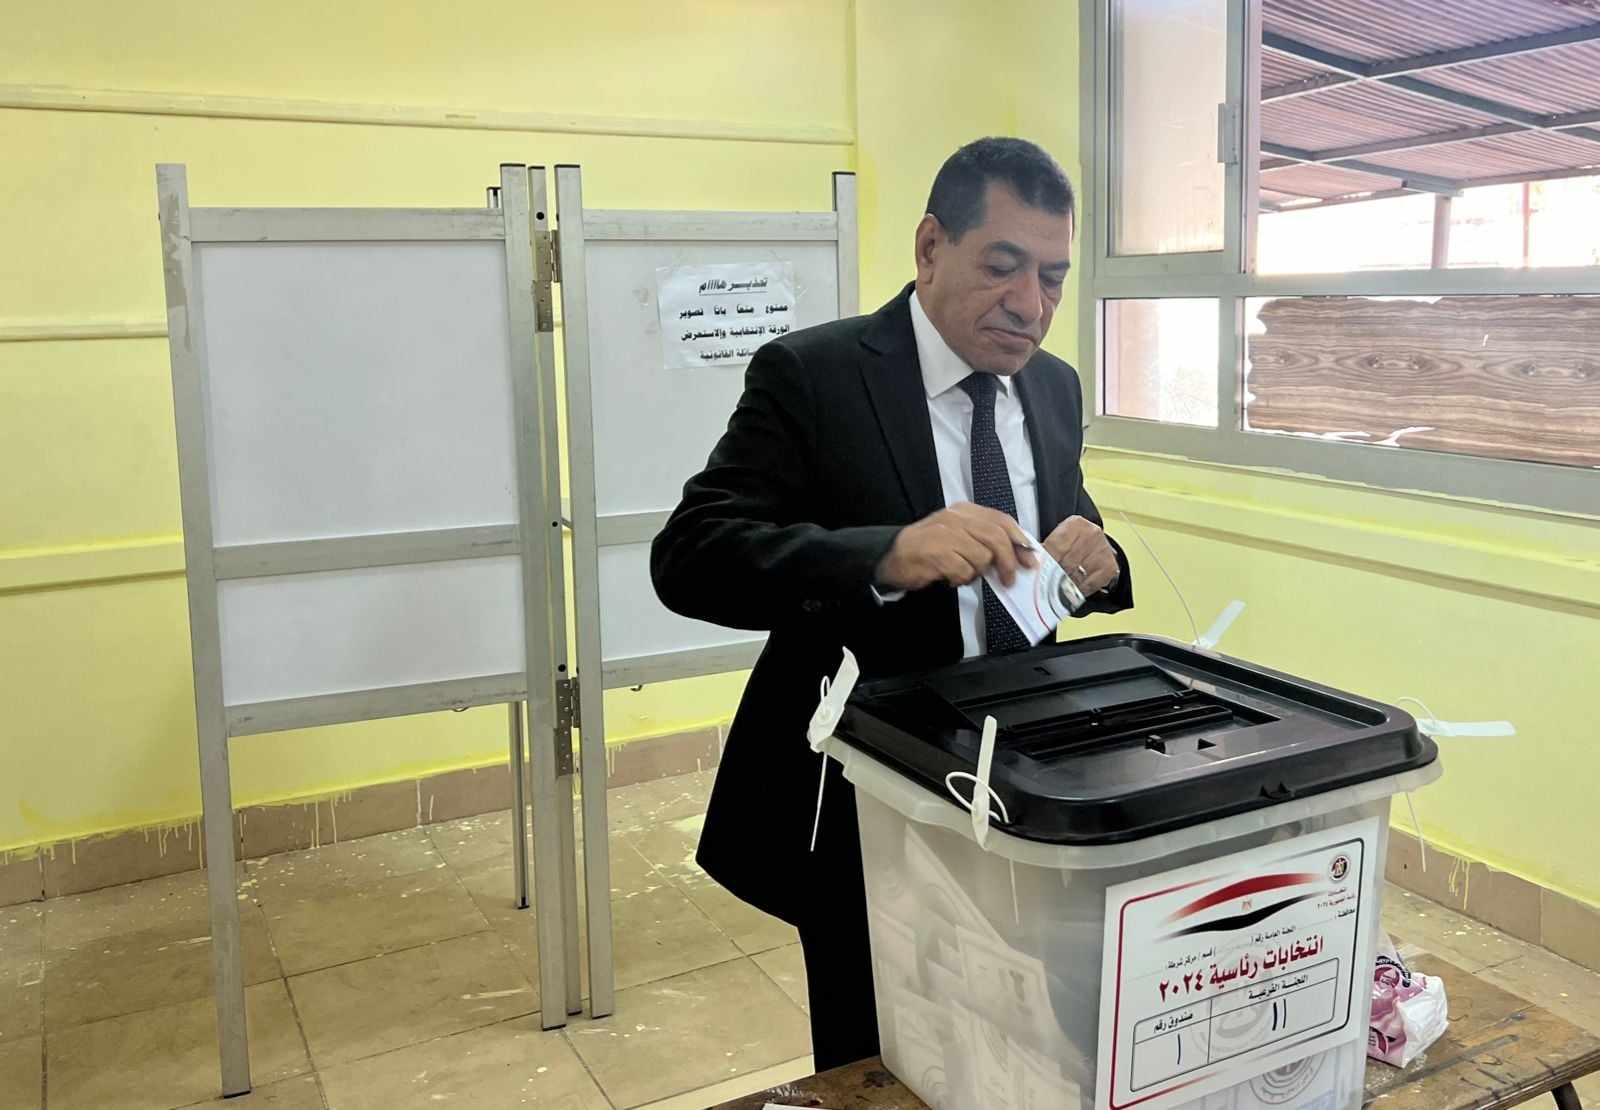 رئيس محكمة استئناف القاهرة يدلي بصوته في الانتخابات الرئاسية

